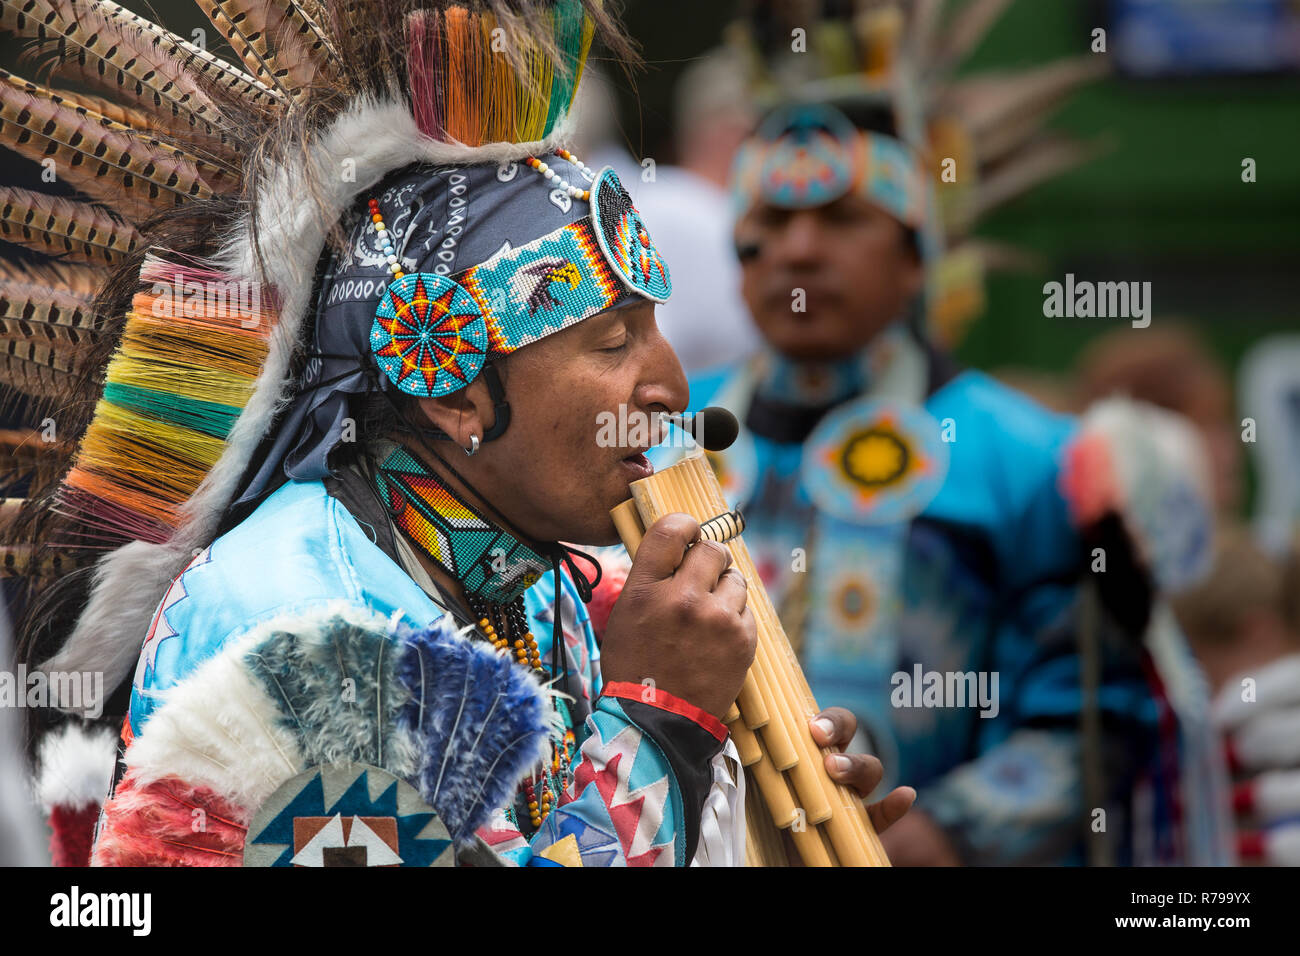 Un portrait de profil d'un musicien ambulant péruvien sud-américain habillé en tenue traditionnelle, colorée et jouer de la flûte de Pan pour les spectateurs Banque D'Images